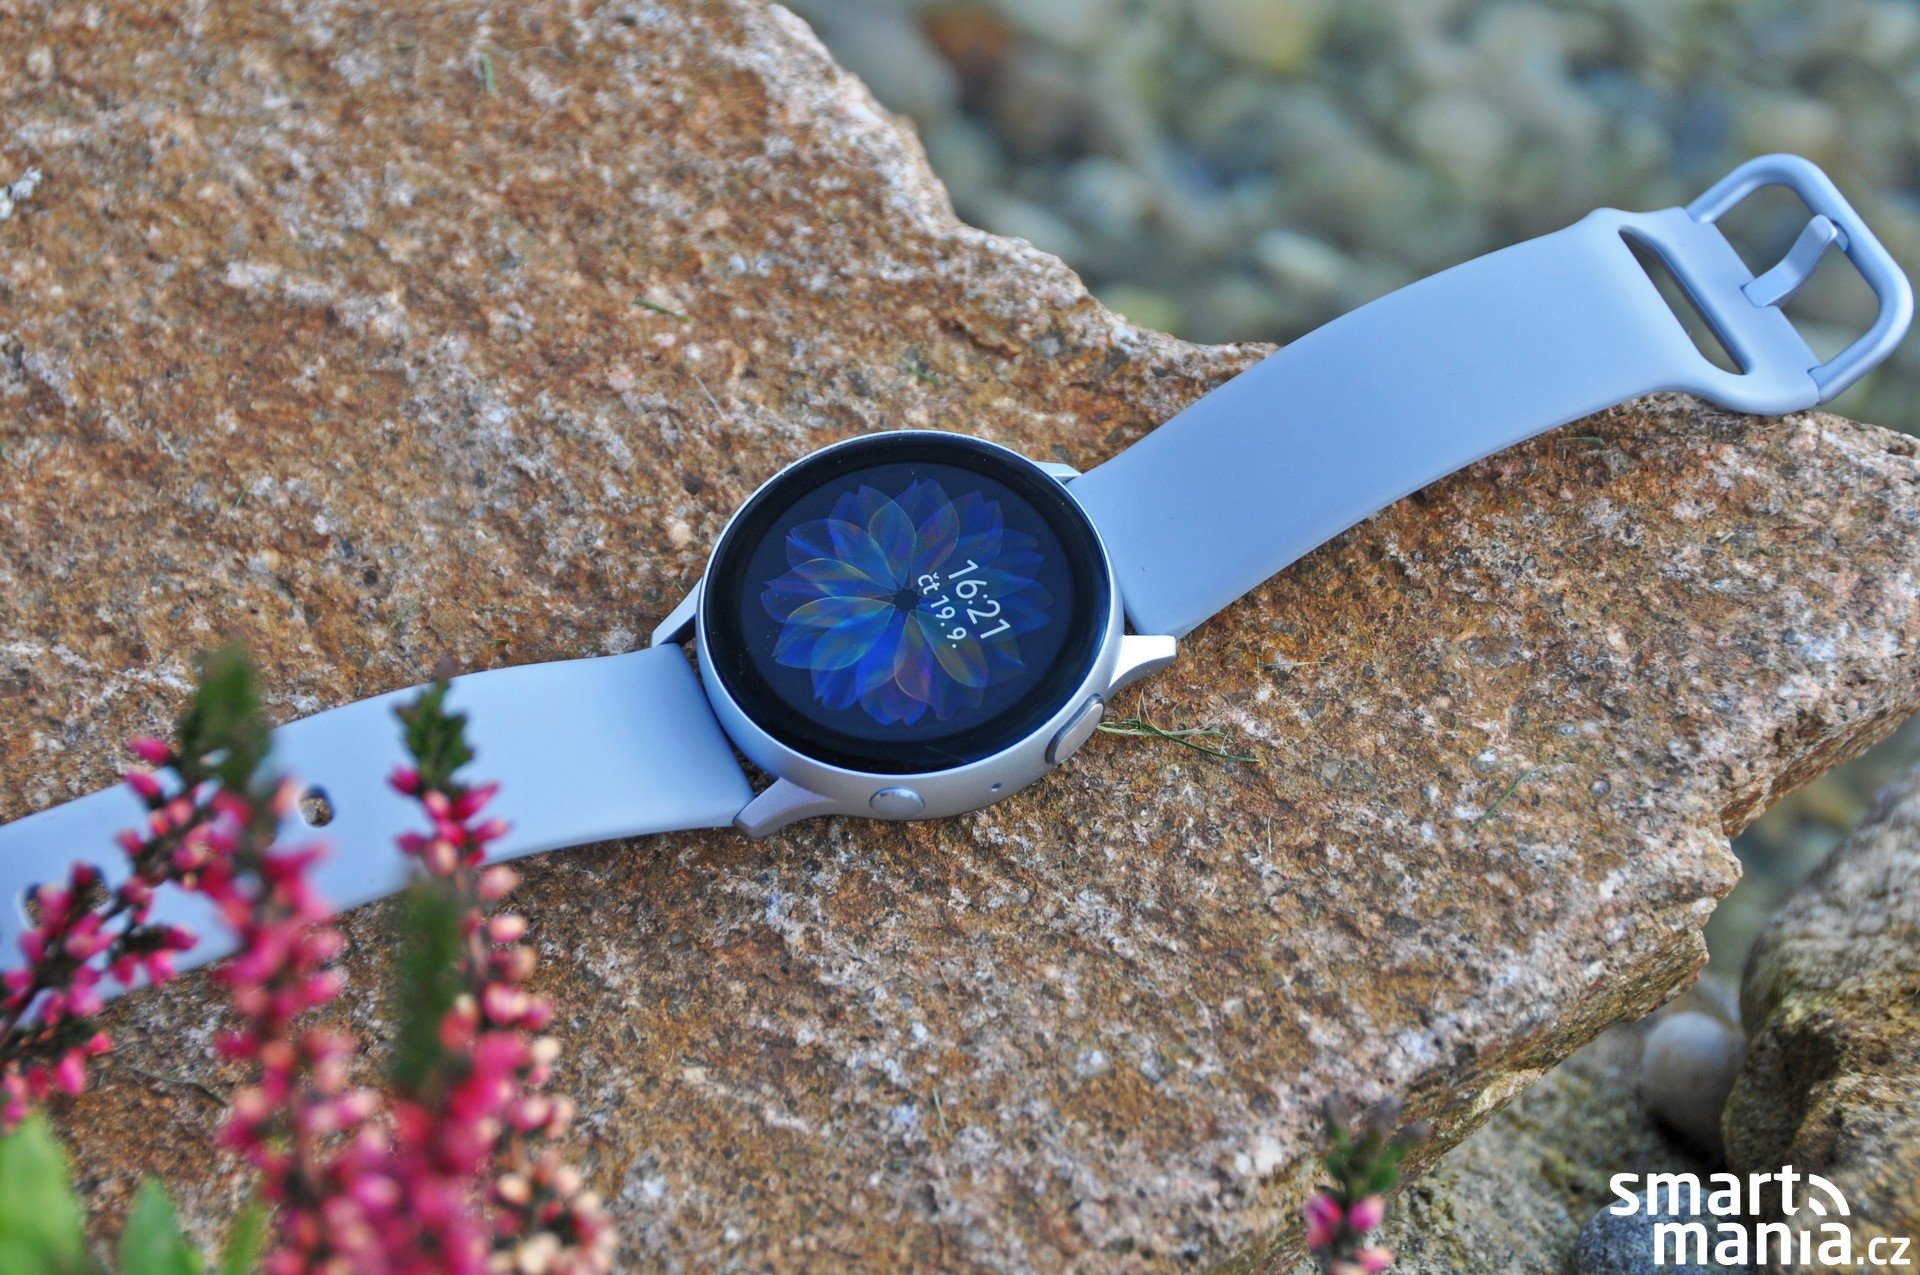 Часы Самсунг Galaxy Watch Active Отзывы